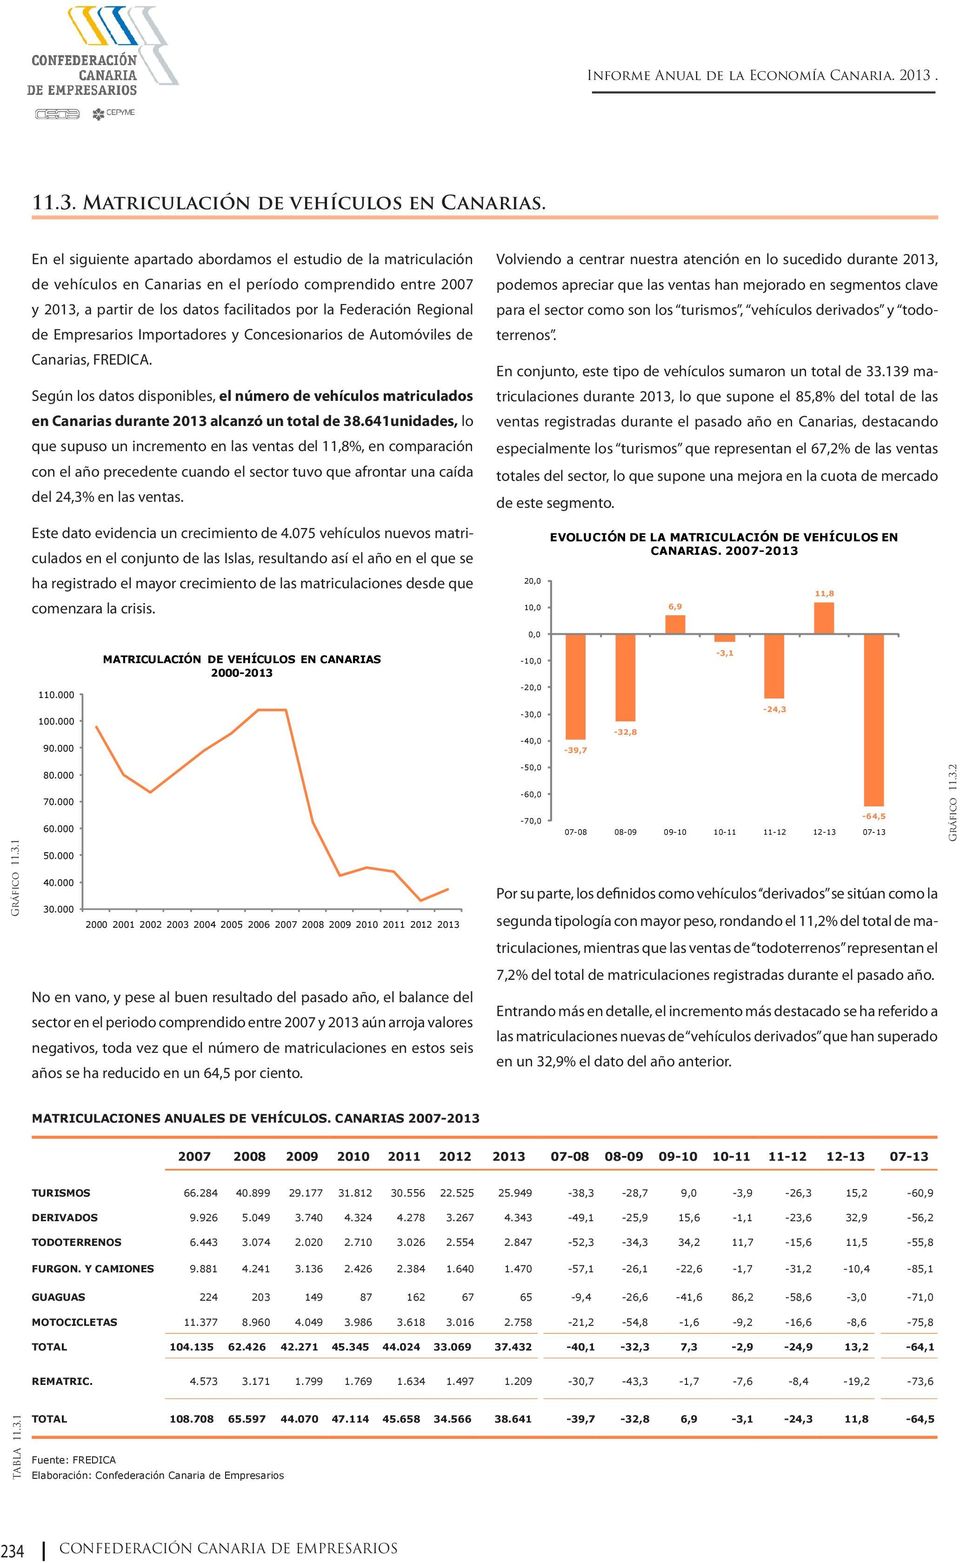 Empresarios Importadores y Concesionarios de Automóviles de Canarias, FREDICA. Según los datos disponibles, el número de vehículos matriculados en Canarias durante 2013 alcanzó un total de 38.